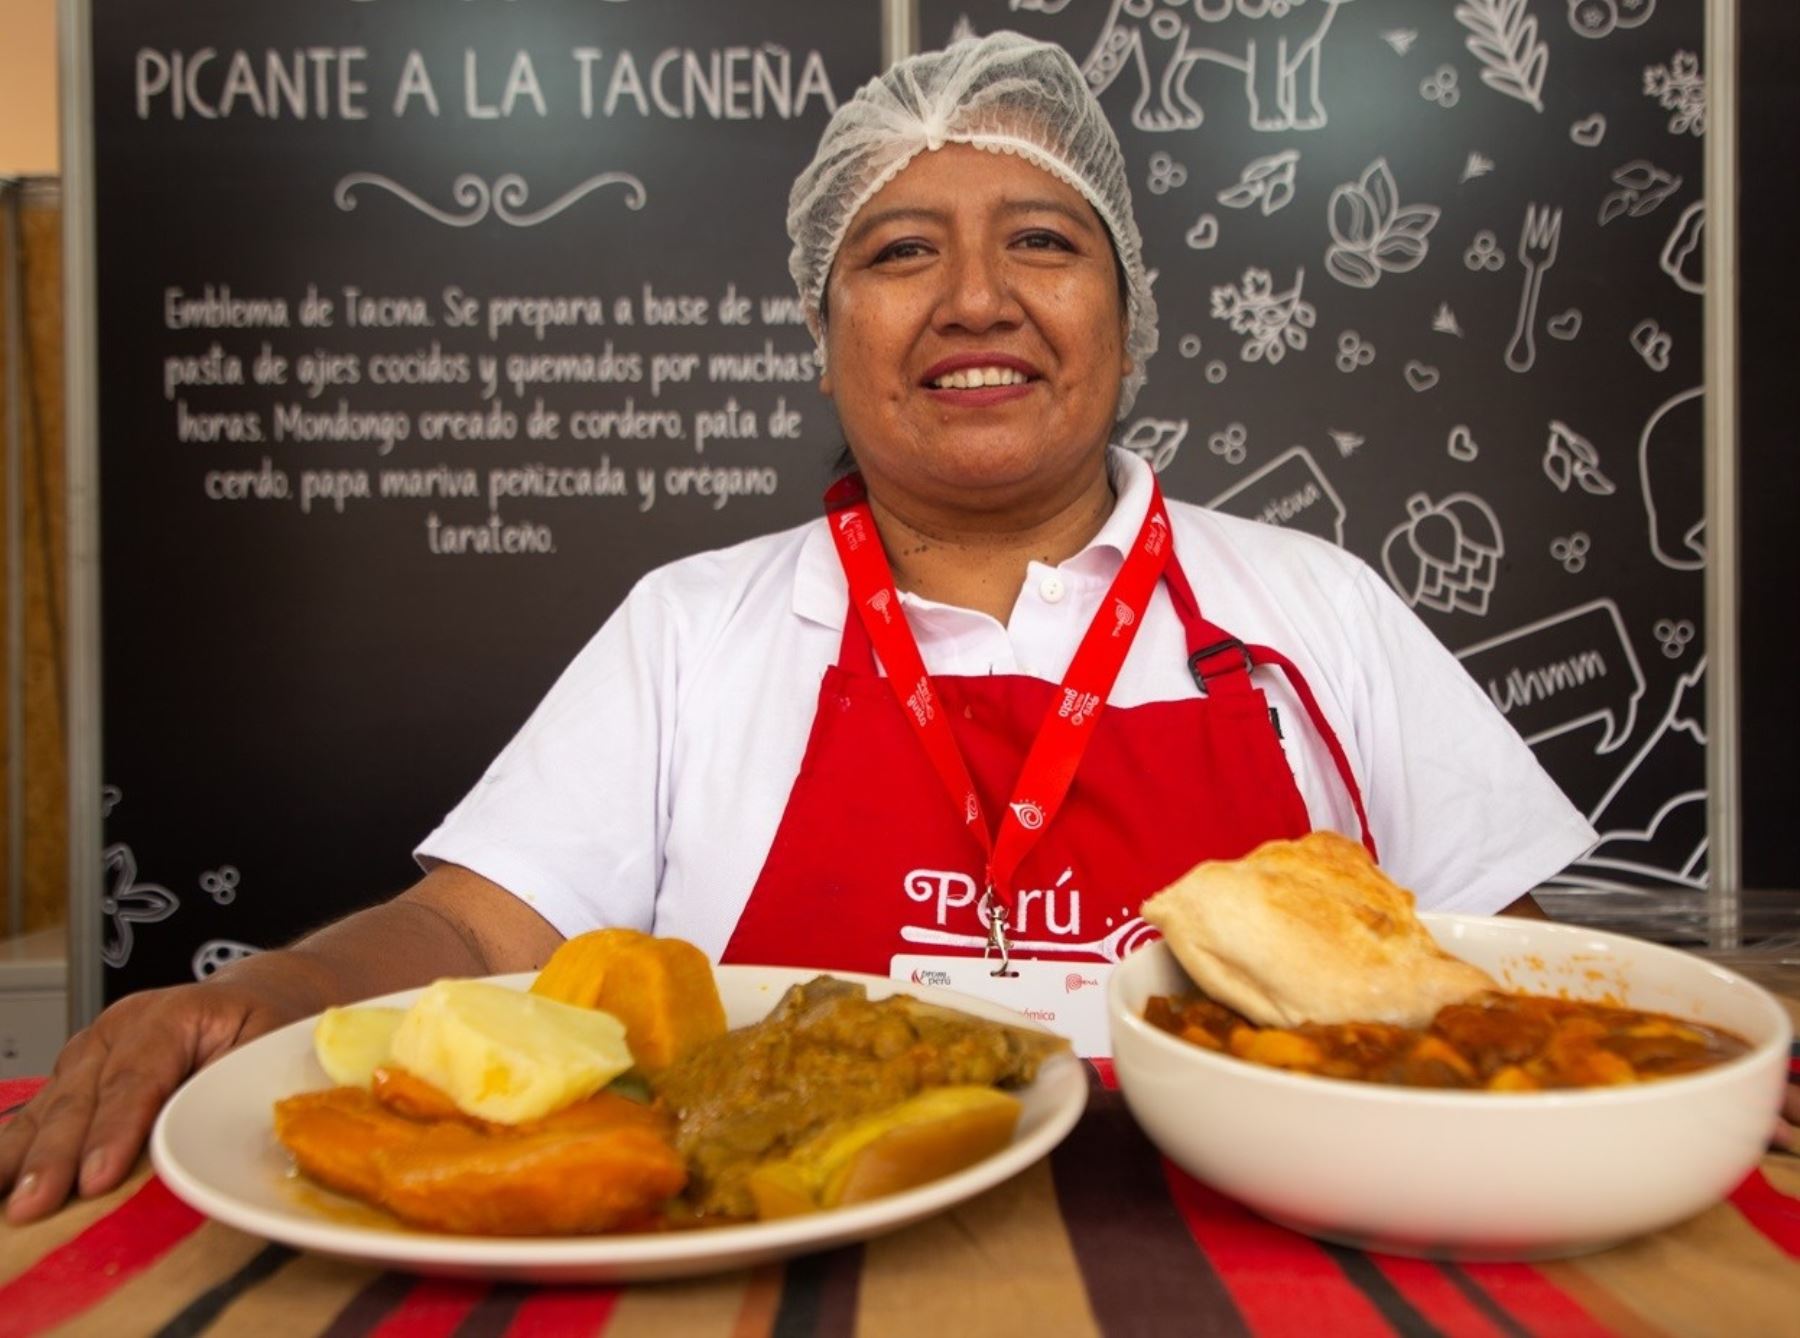 Tacna volverá a ser anfitrión de la feria Perú Mucho Gusto. La fiesta gastronómica se realizará del 26 al 28 de julio. En el aniversario patrio, la ciudad heroica espera recibir a miles de turistas. ANDINA/Difusión